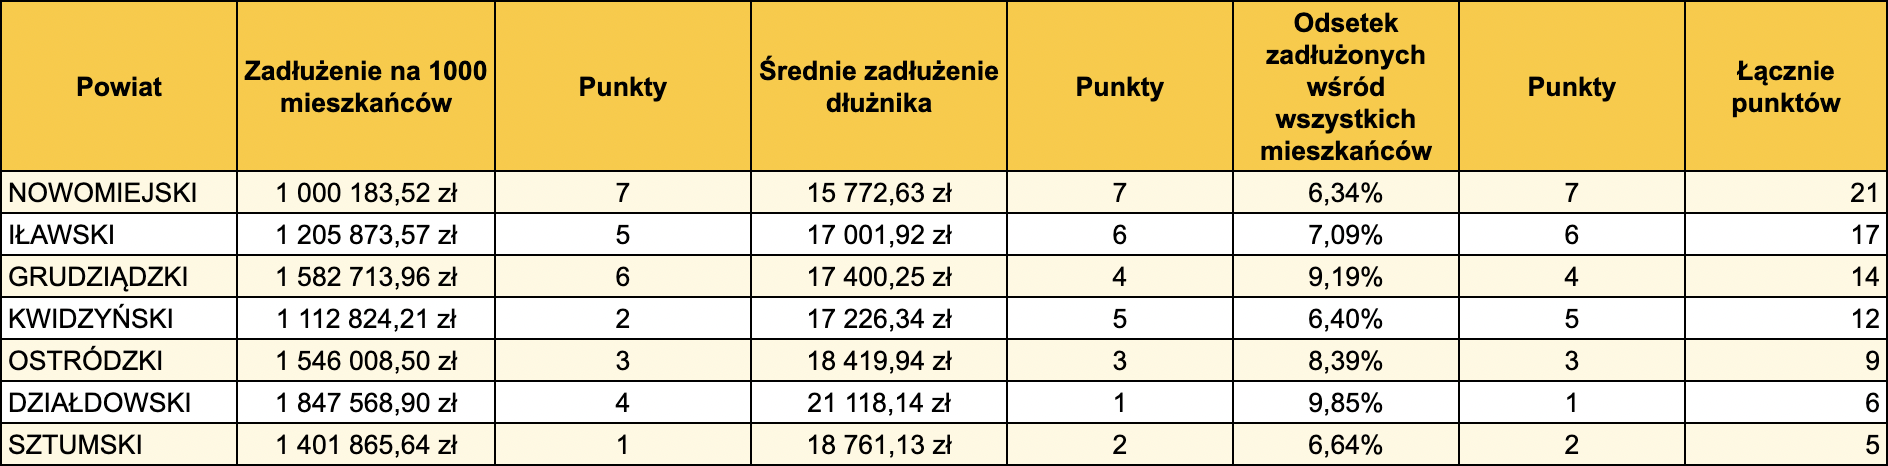 Średni dług finansowy w powiecie iławskim to 17 tys. zł. Jak wygląda to na tle innych powiatów naszego regionu?